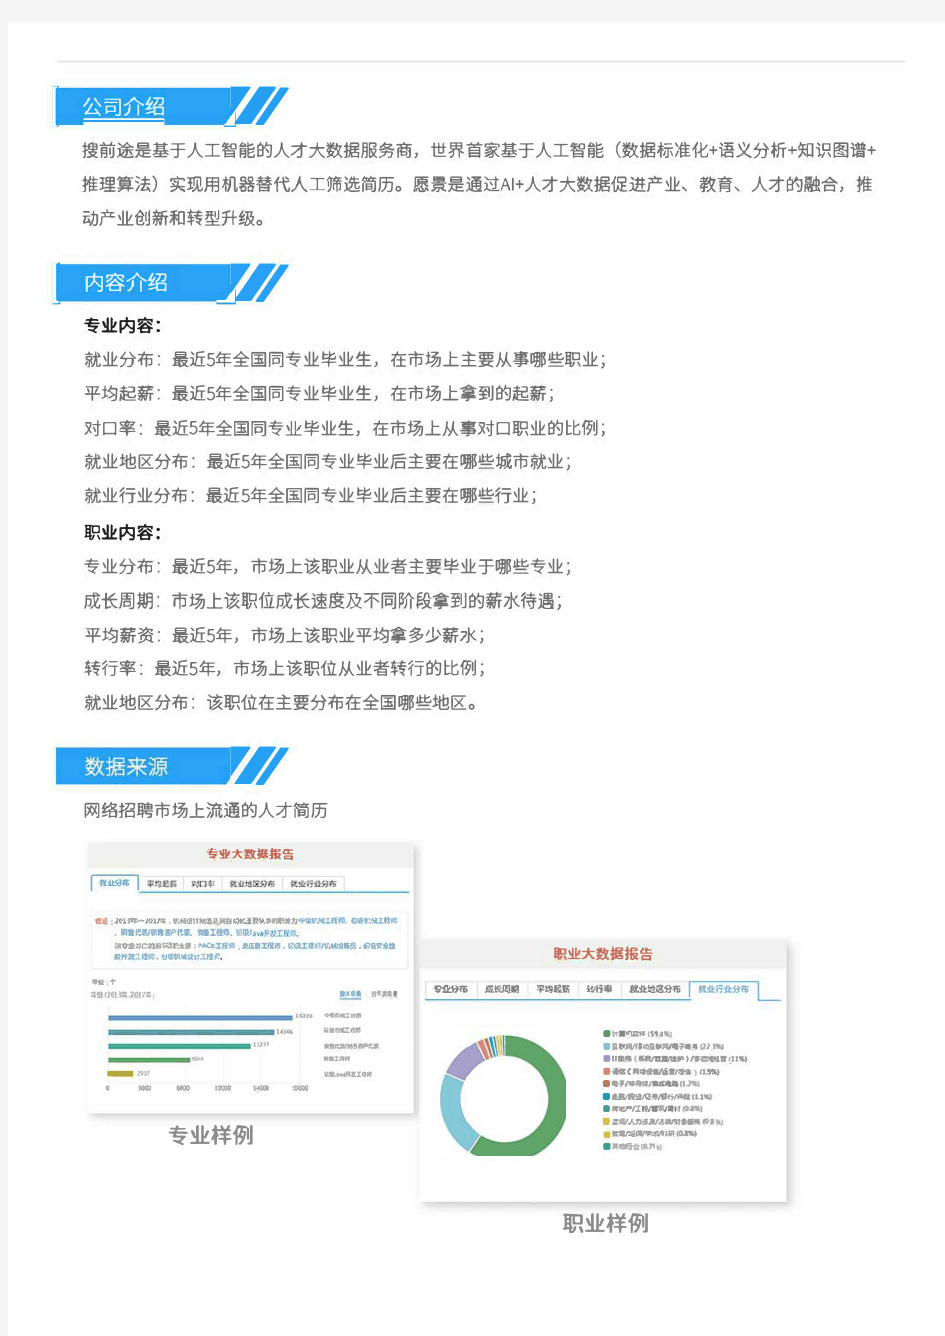 2013-2017年北京邮电大学信息安全专业毕业生就业大数据报告